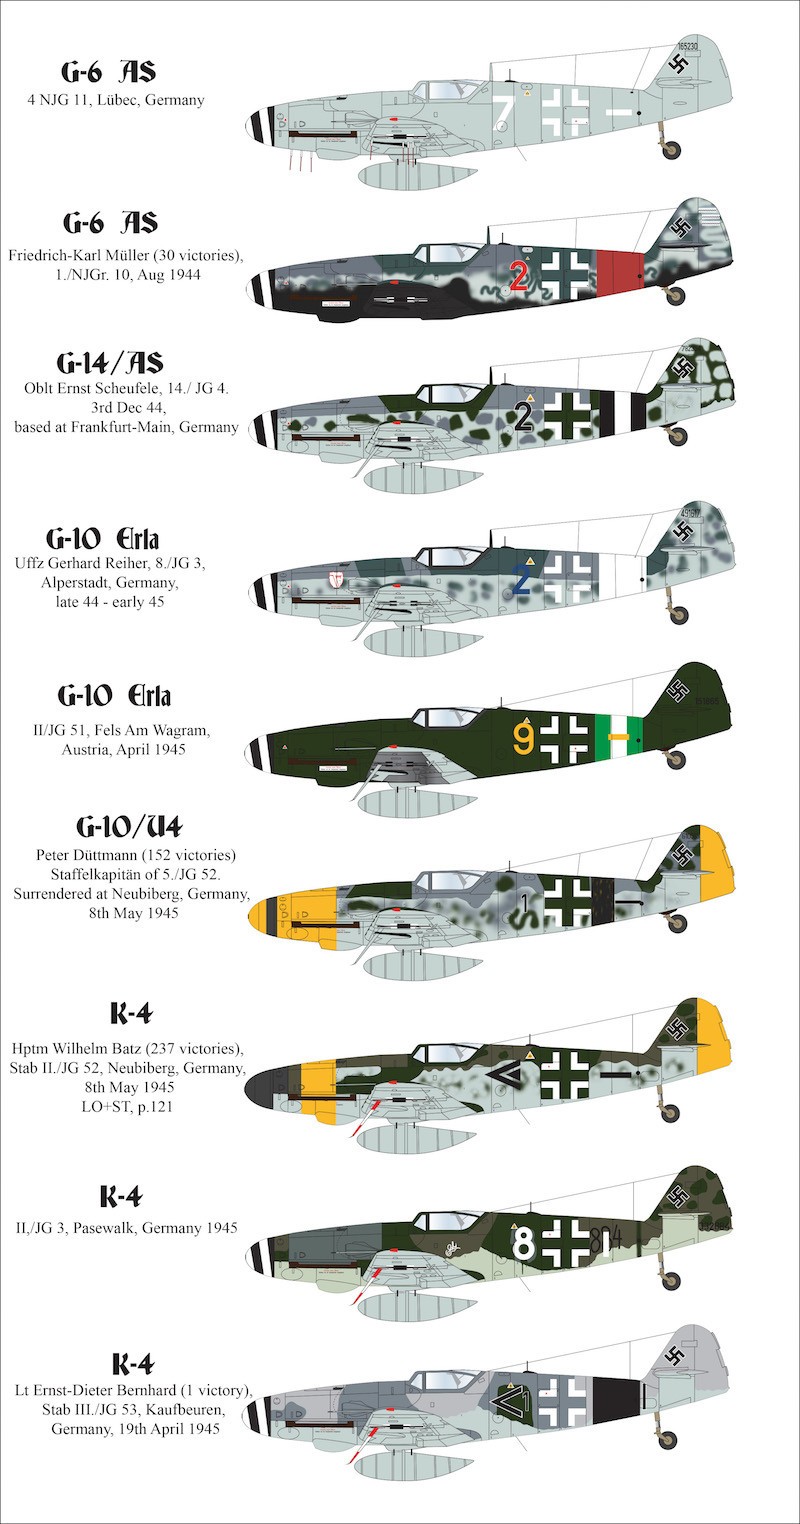  Aims Décal Messerschmitt Bf-109's'Bf-109G-6 / AS White 7, 4 NJG 11, L